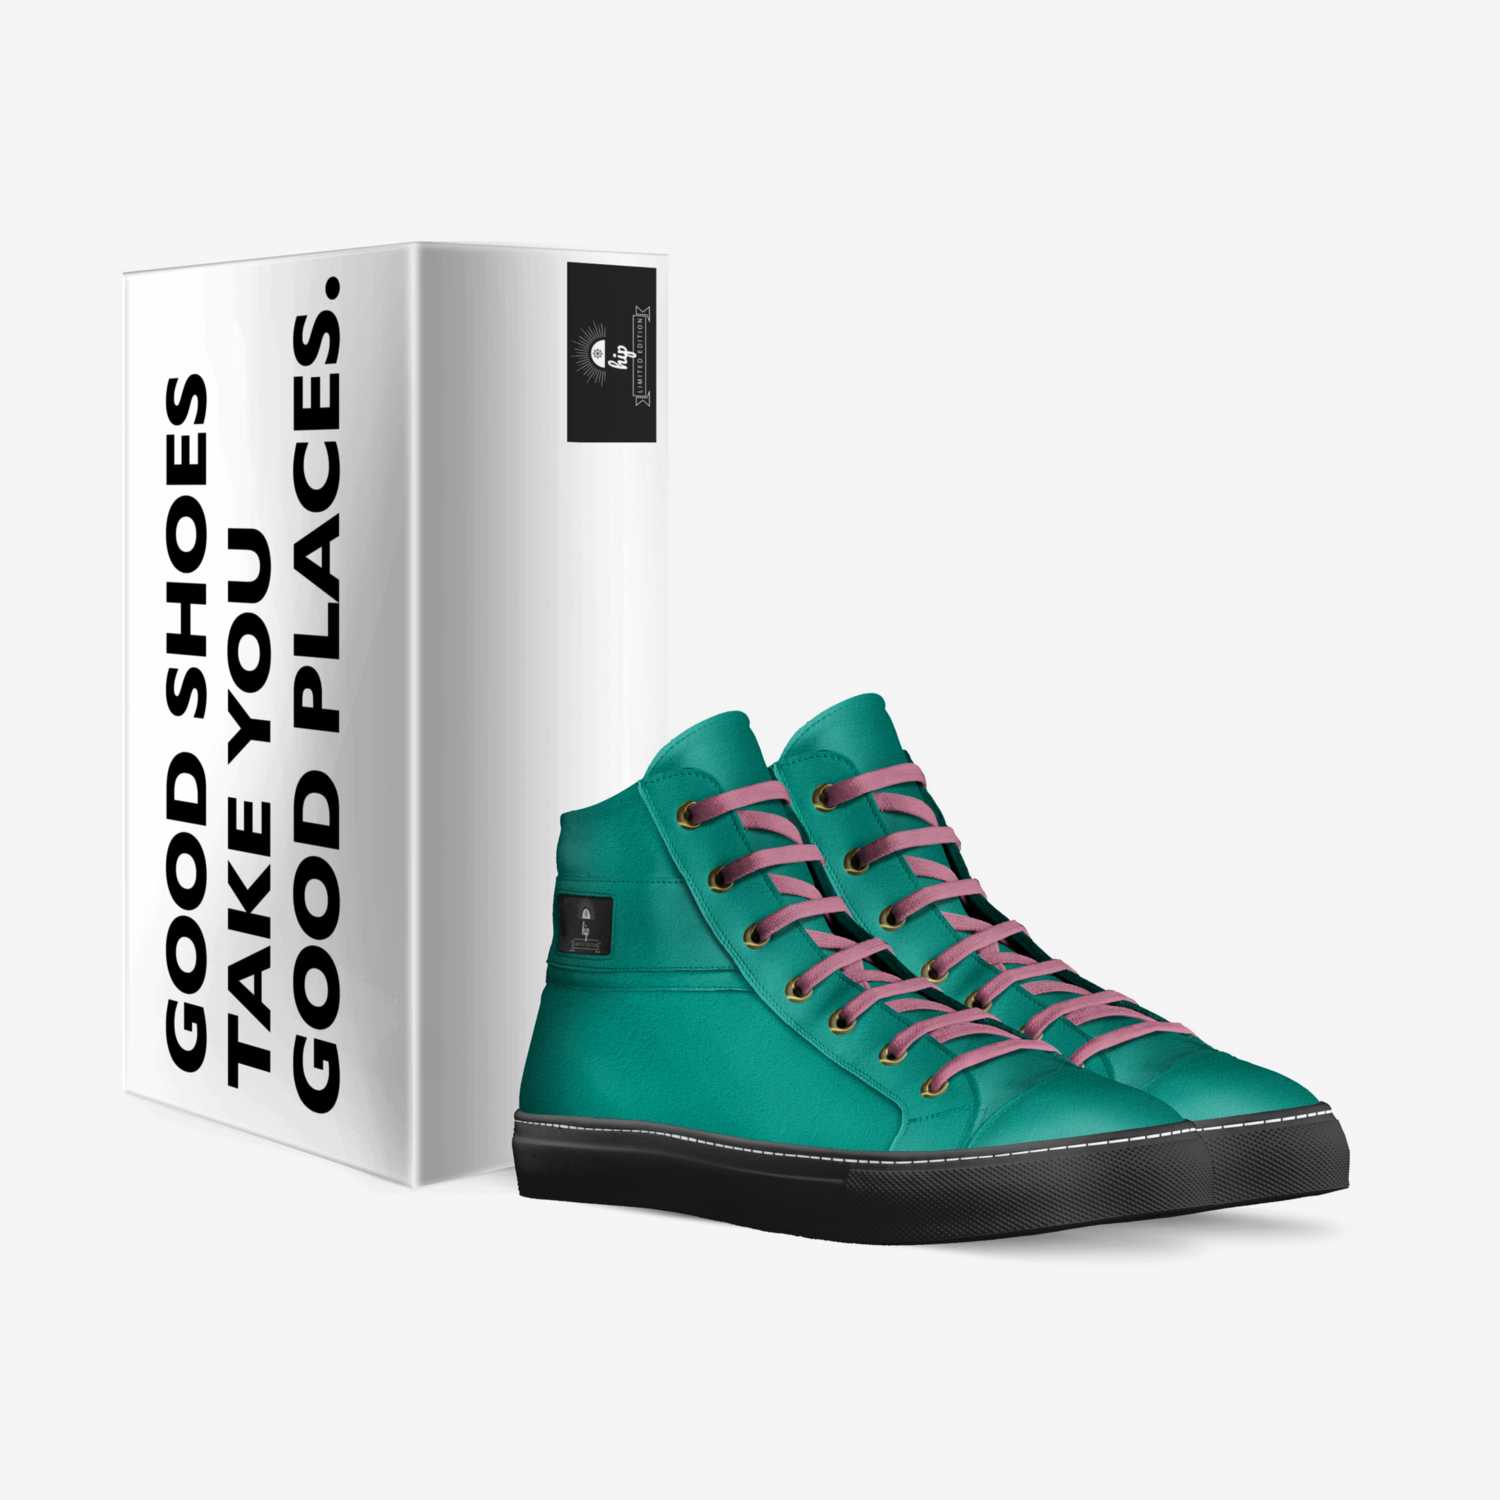 yoyoyoyoyyoyoyyyyy custom made in Italy shoes by London Dawkins | Box view